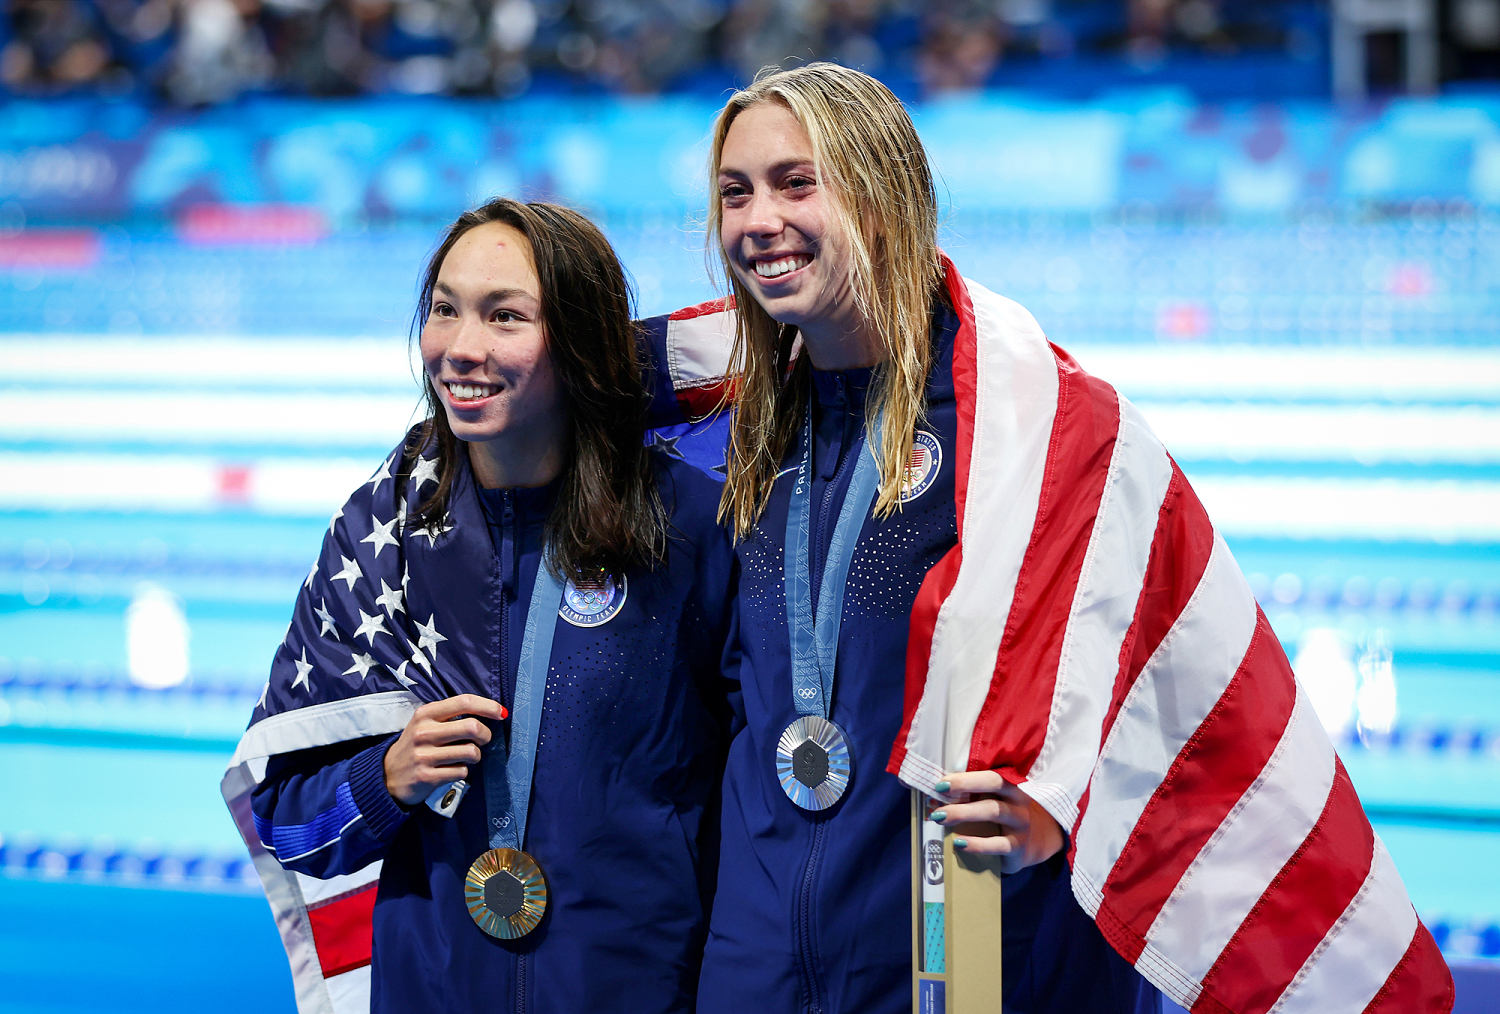 Double win for U.S.: Swimmer Torri Huske wins gold, Gretchen Walsh takes silver in 100m butterfly